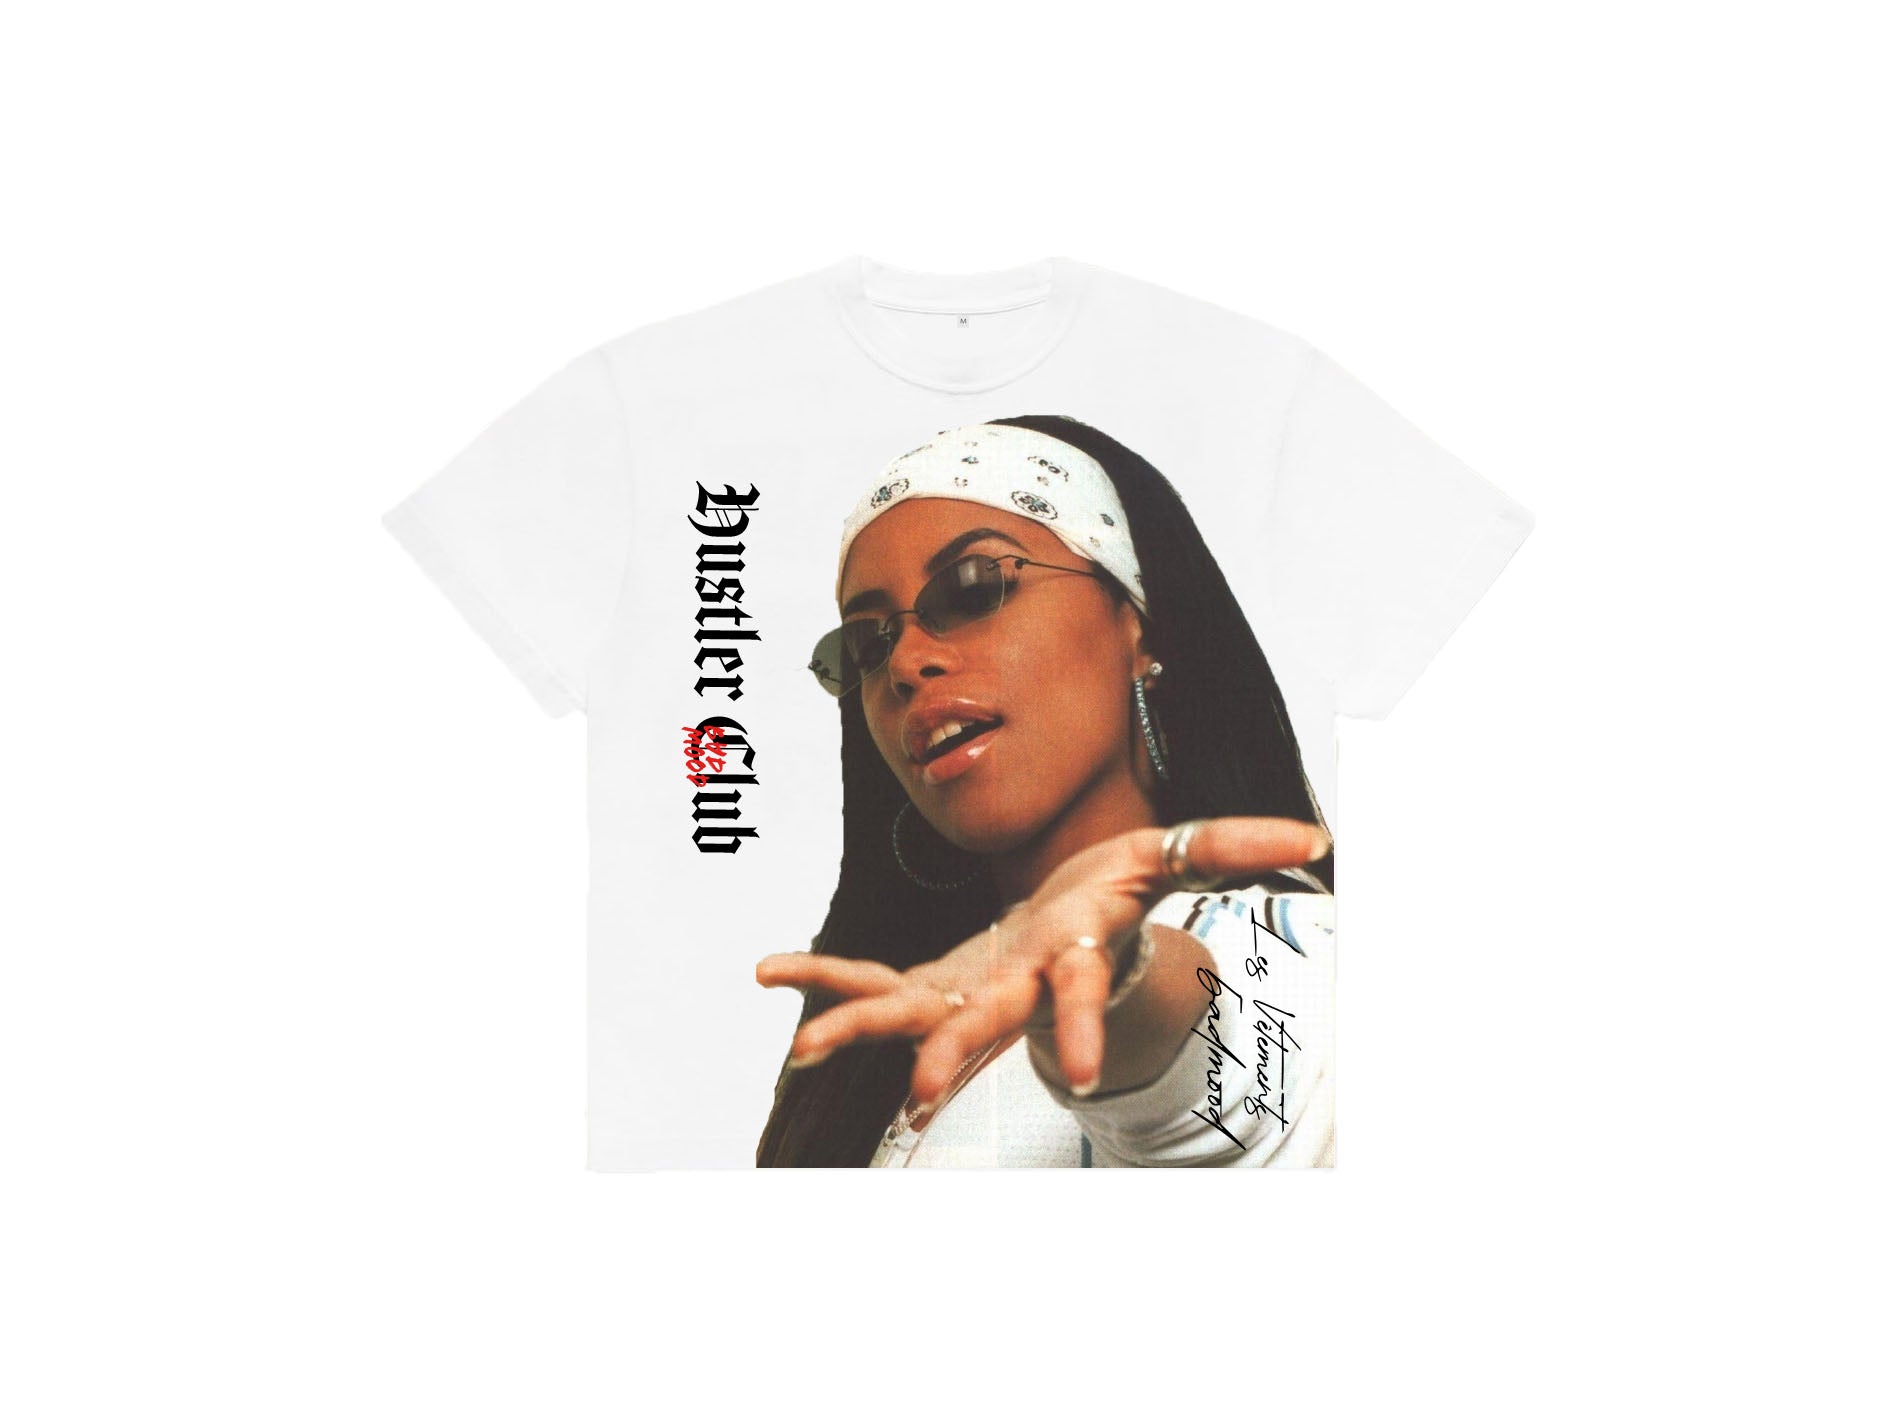 White Aaliyah T-shirt